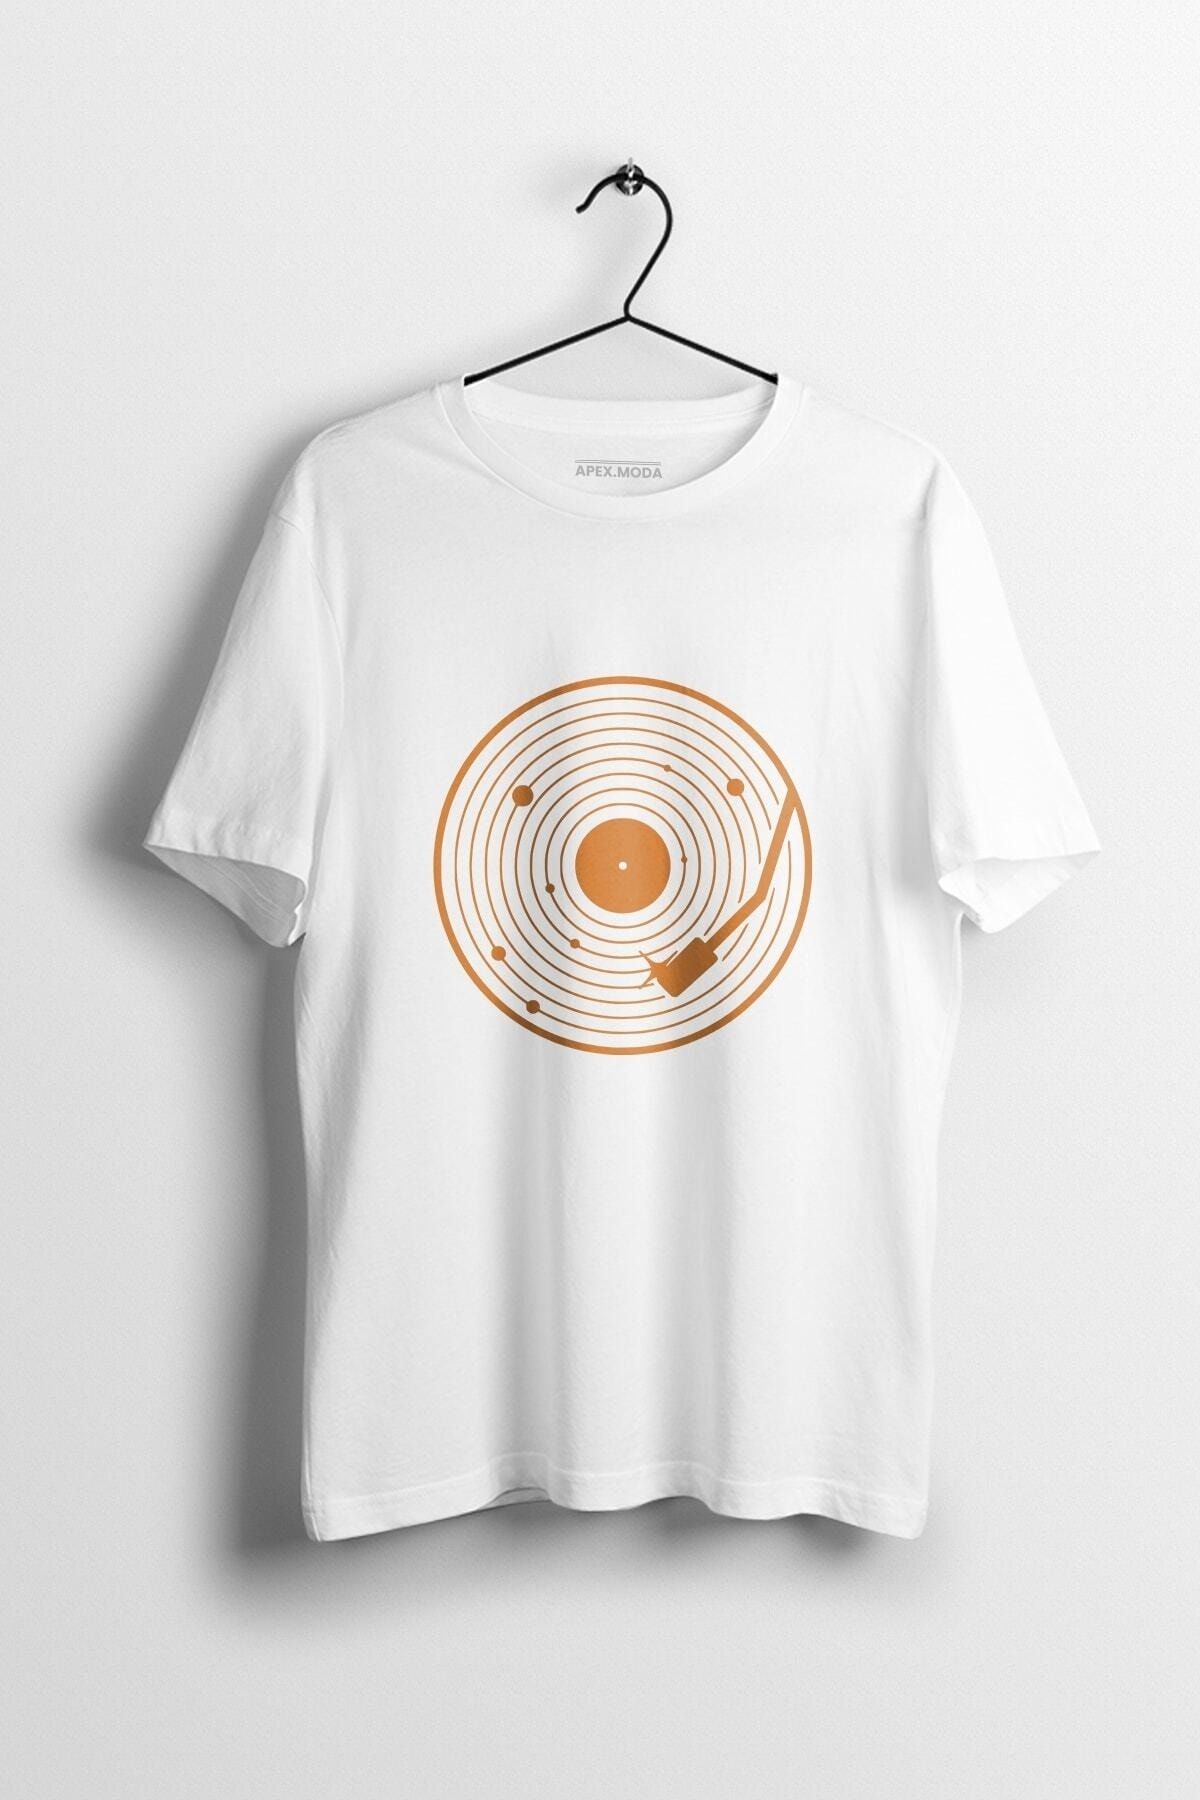 WePOD Planet Records Baskılı Tişört Baskılı Beyaz Kısa Kollu Unisex Tişört